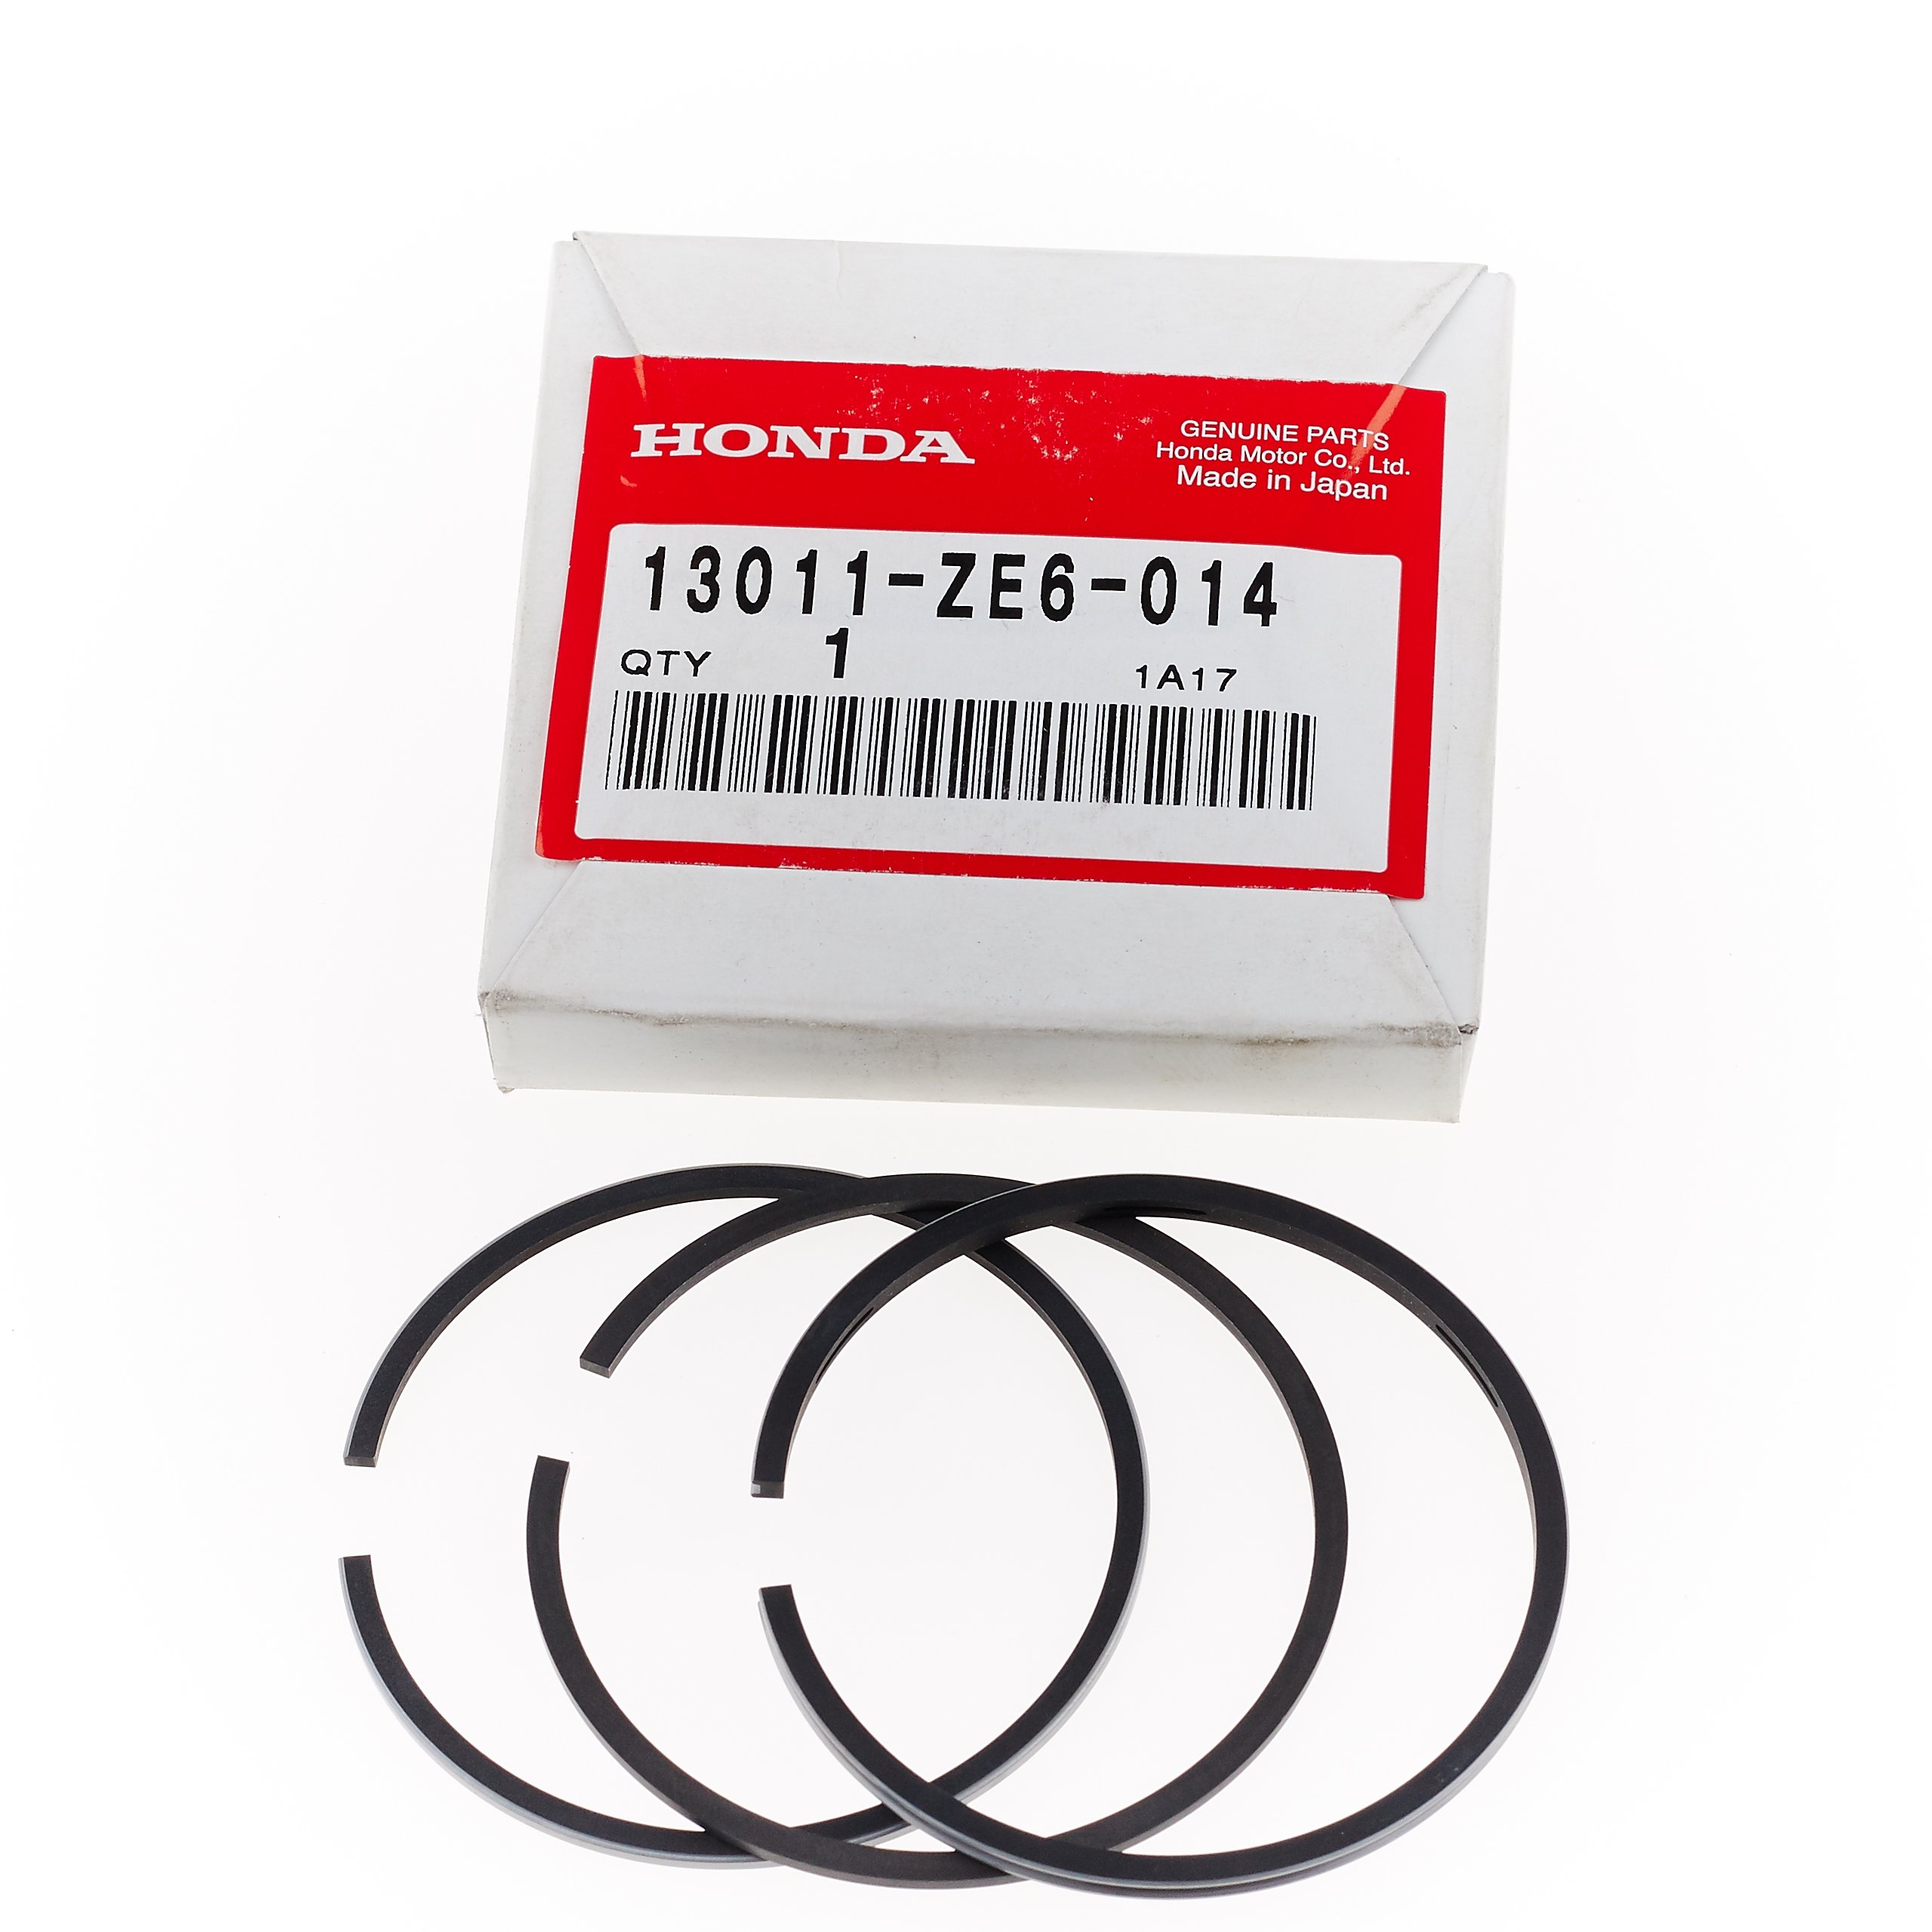 Кольца поршневые honda. Кольца поршневые Honda gx120. Кольца поршневые для Honda GX 120 (60mm). Honda 13011-r40-a12 комплект поршневых колец. Кольца поршневые для Honda GX 120 (60mm) 109022 Размеры.